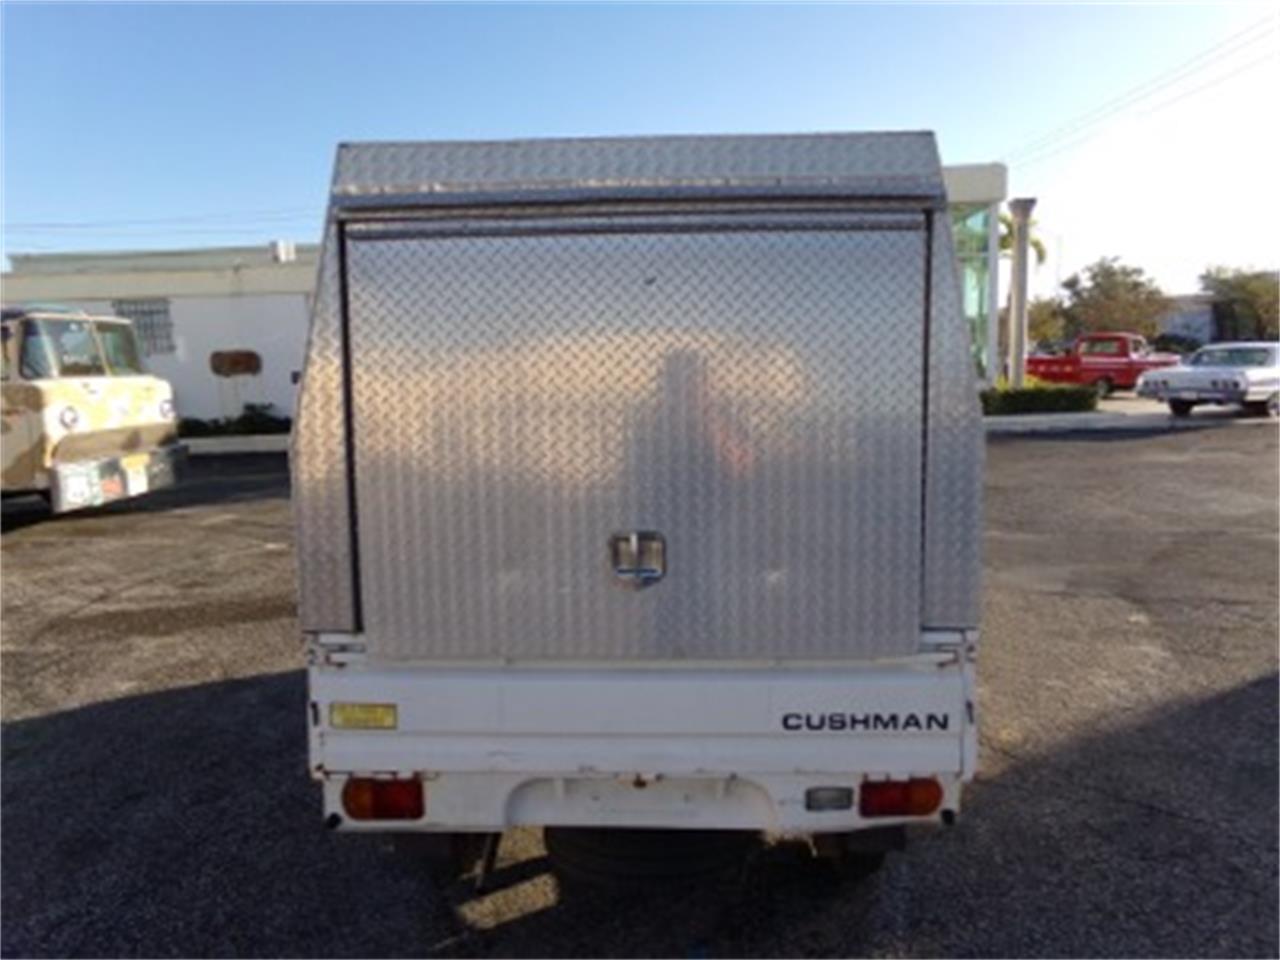 cushman truckster manual free